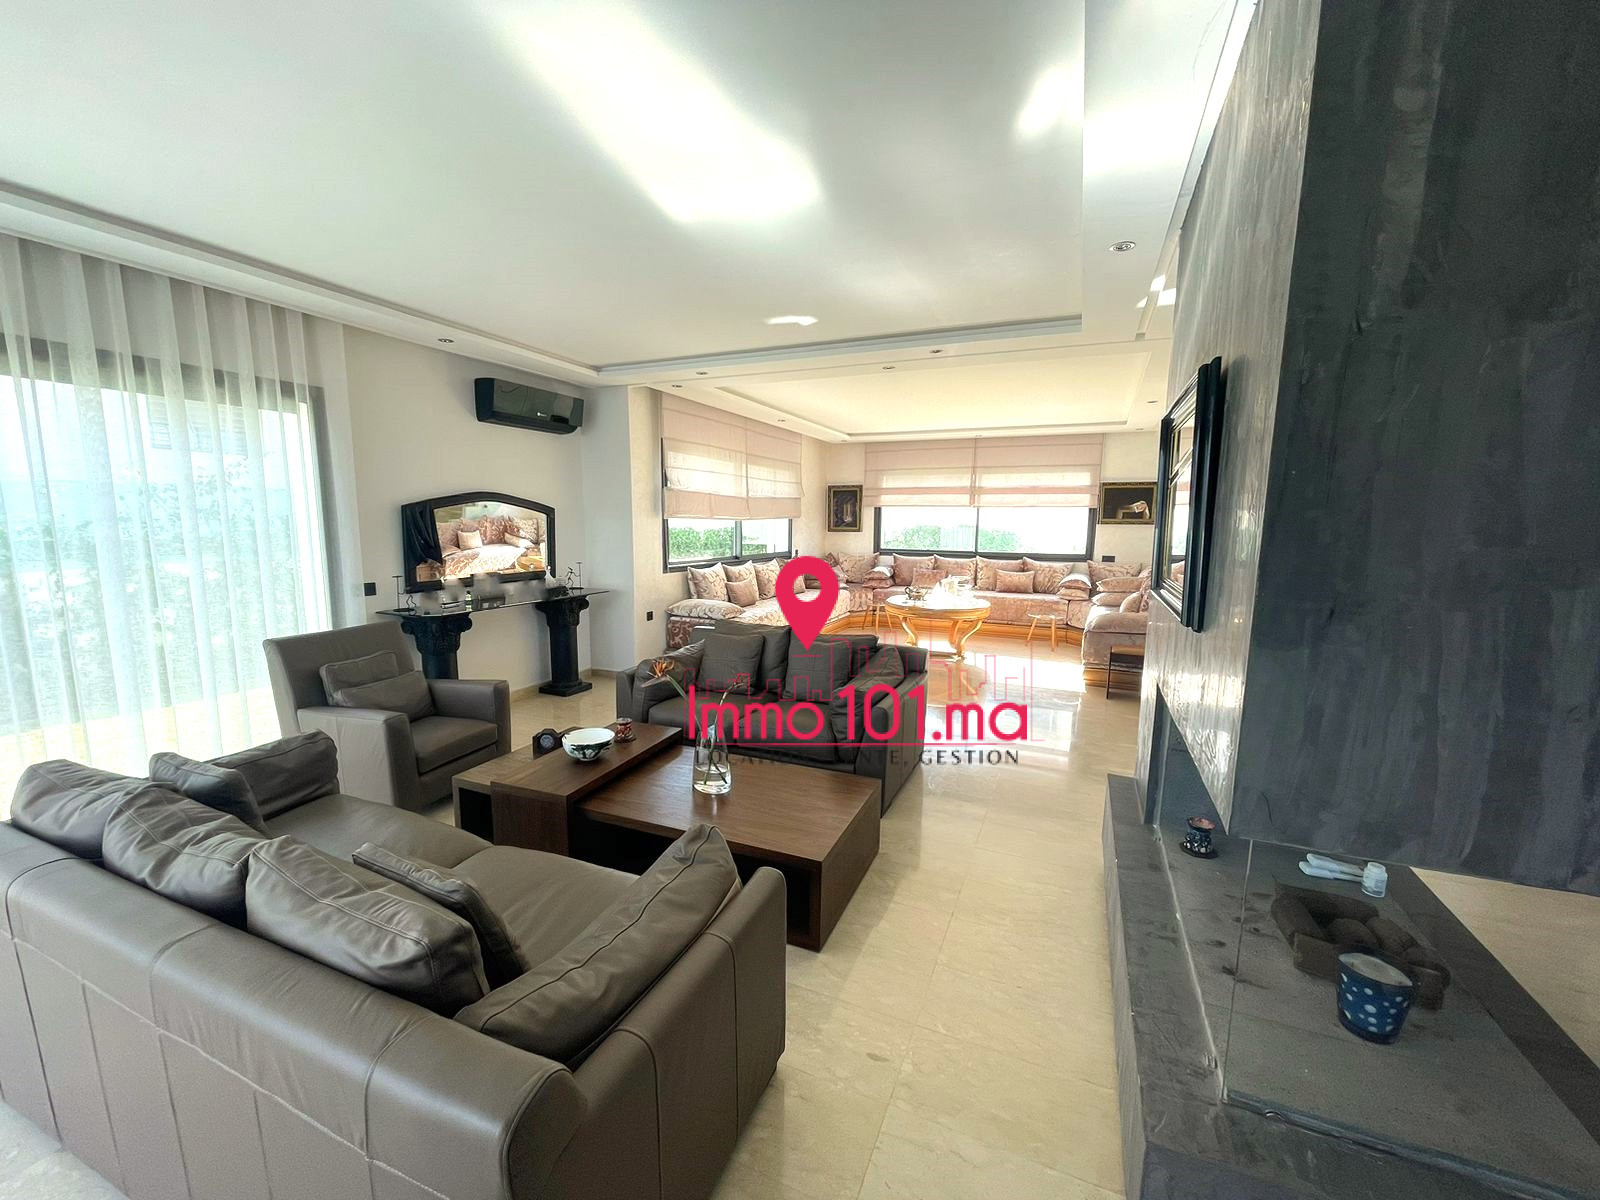 Villa neuve à vendre à Tamesna SIV1568